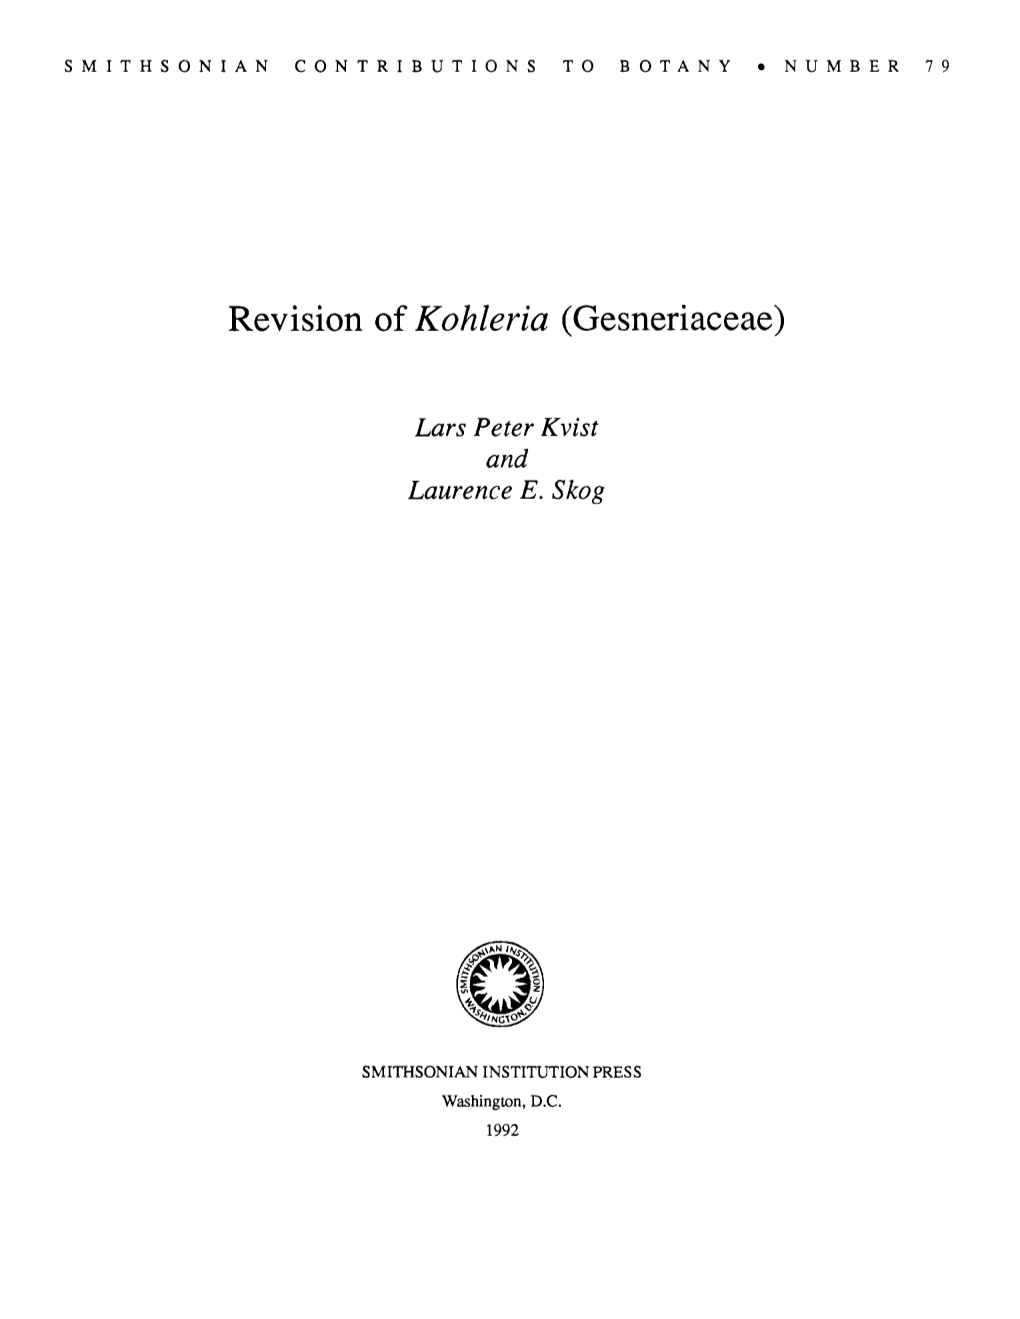 Revision of Kohleria (Gesneriaceae)